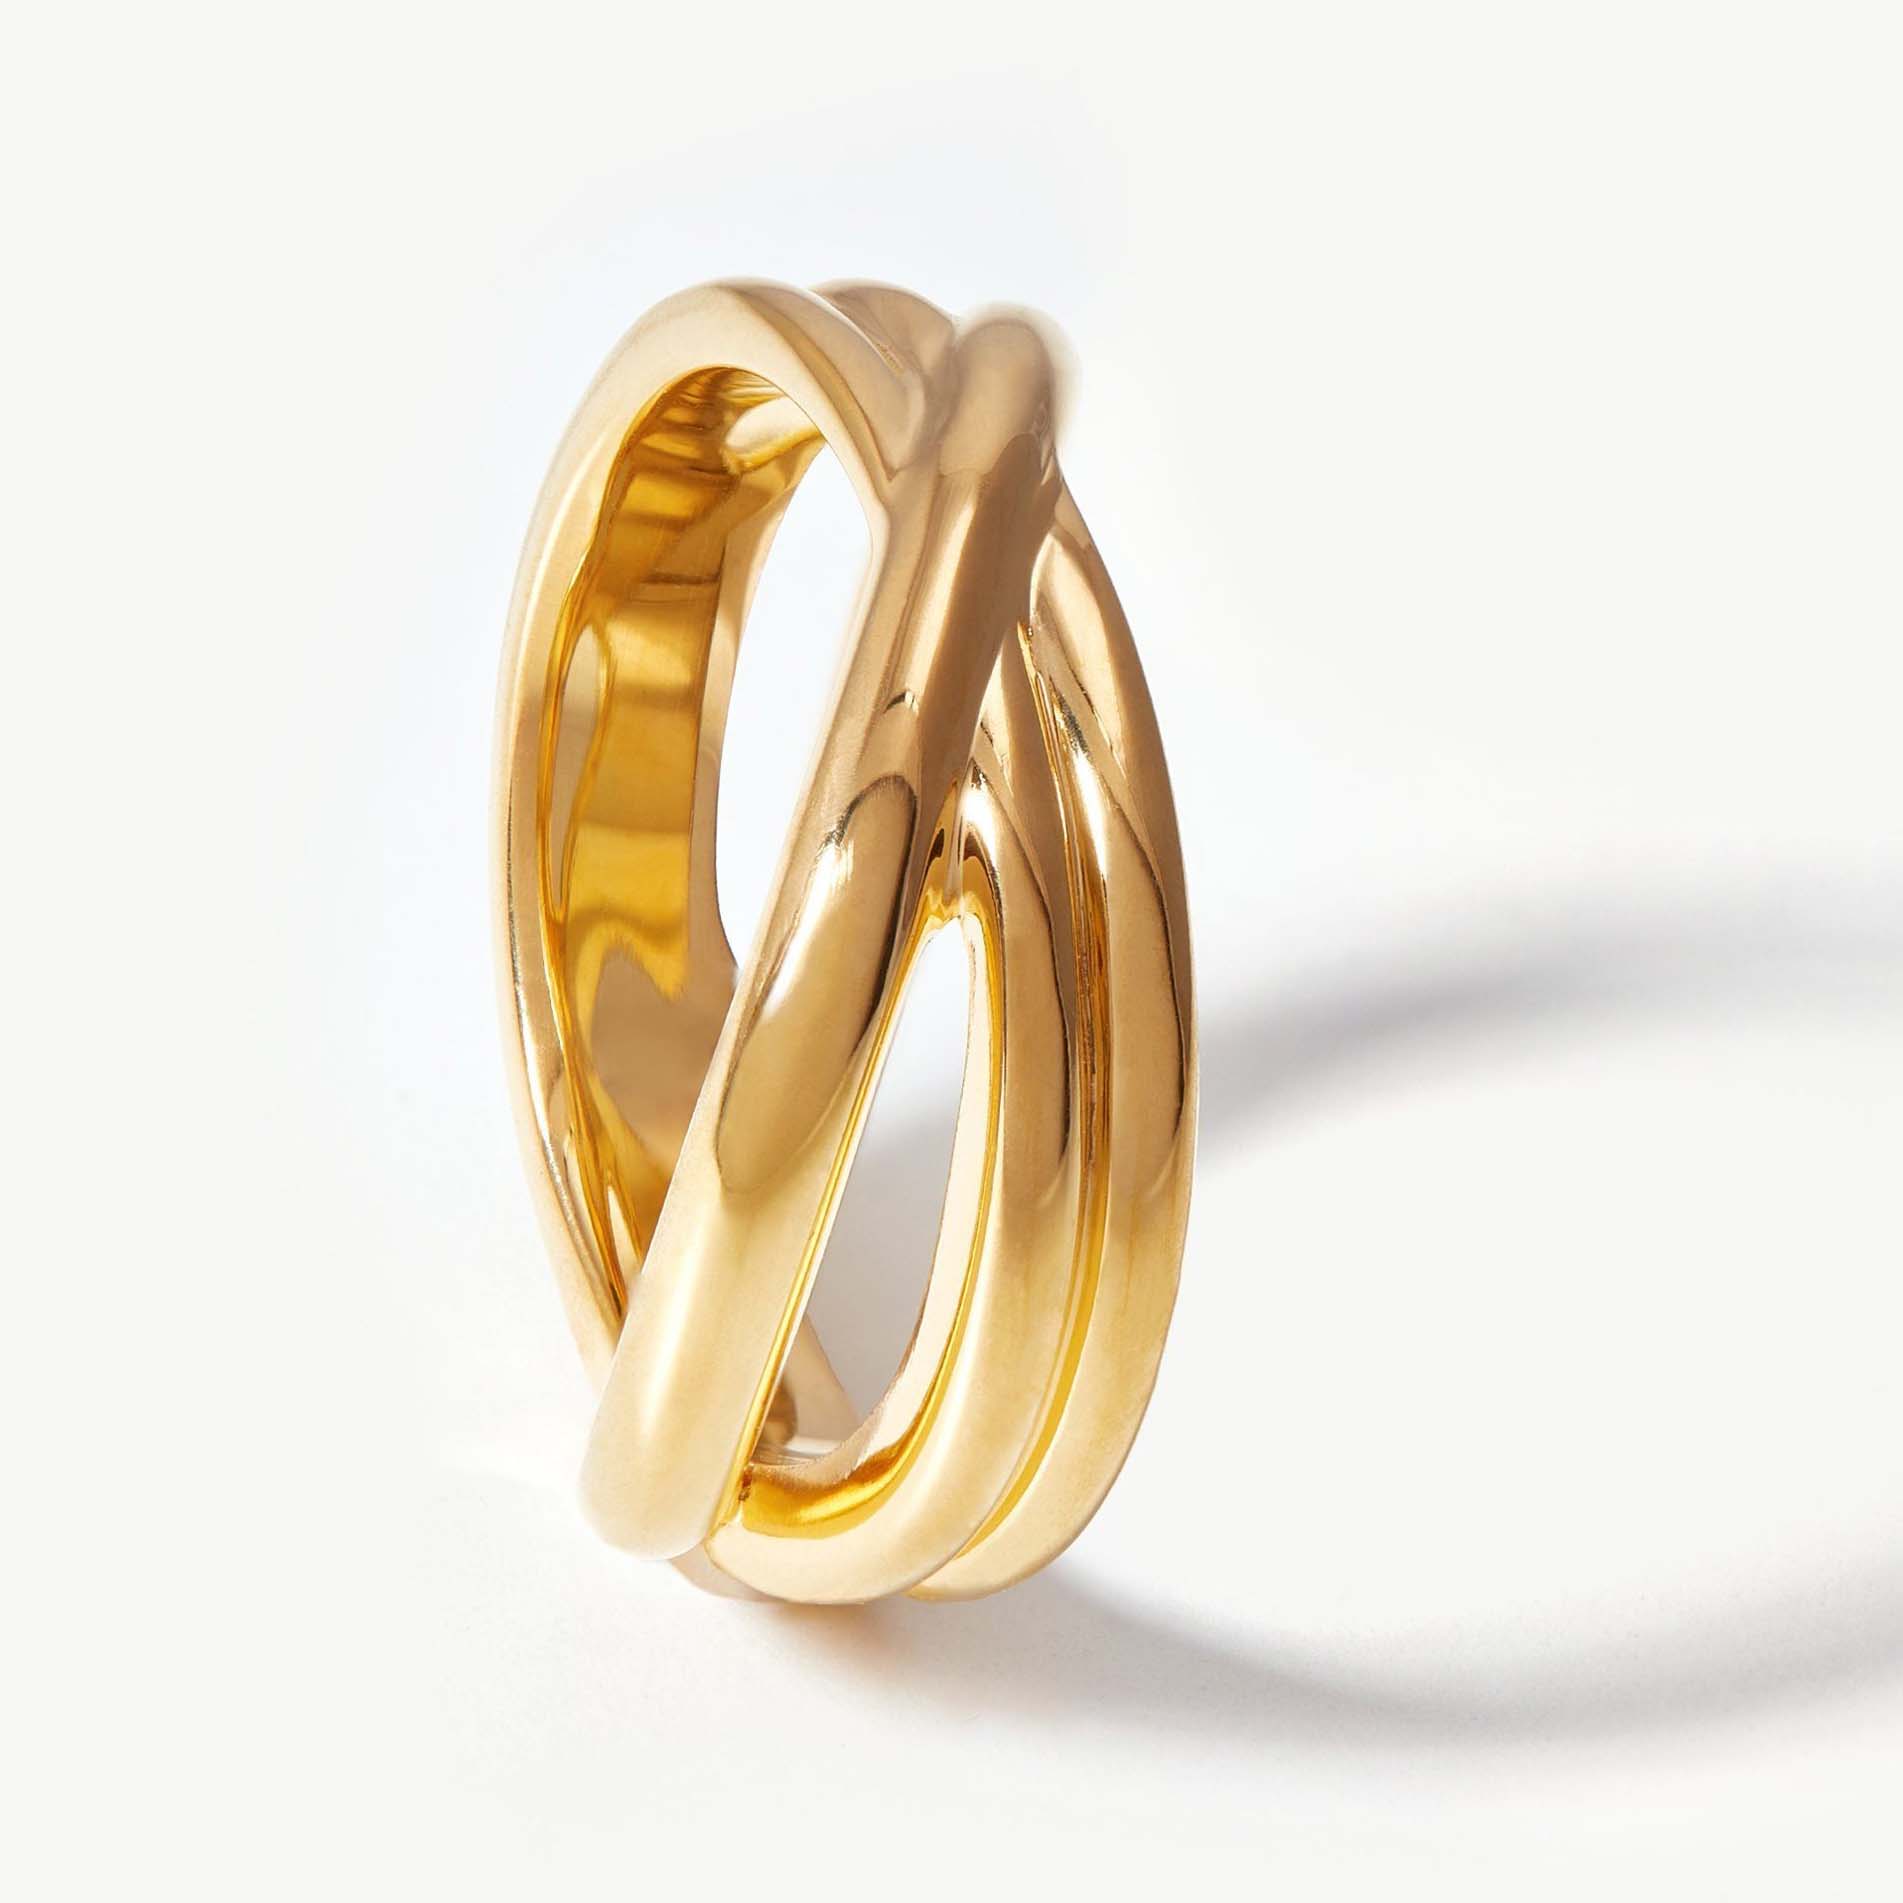 Изготовьте по индивидуальному заказу кольцо с покрытием из 18-каратного золота на стерлинговом серебре по конкурентоспособной цене.